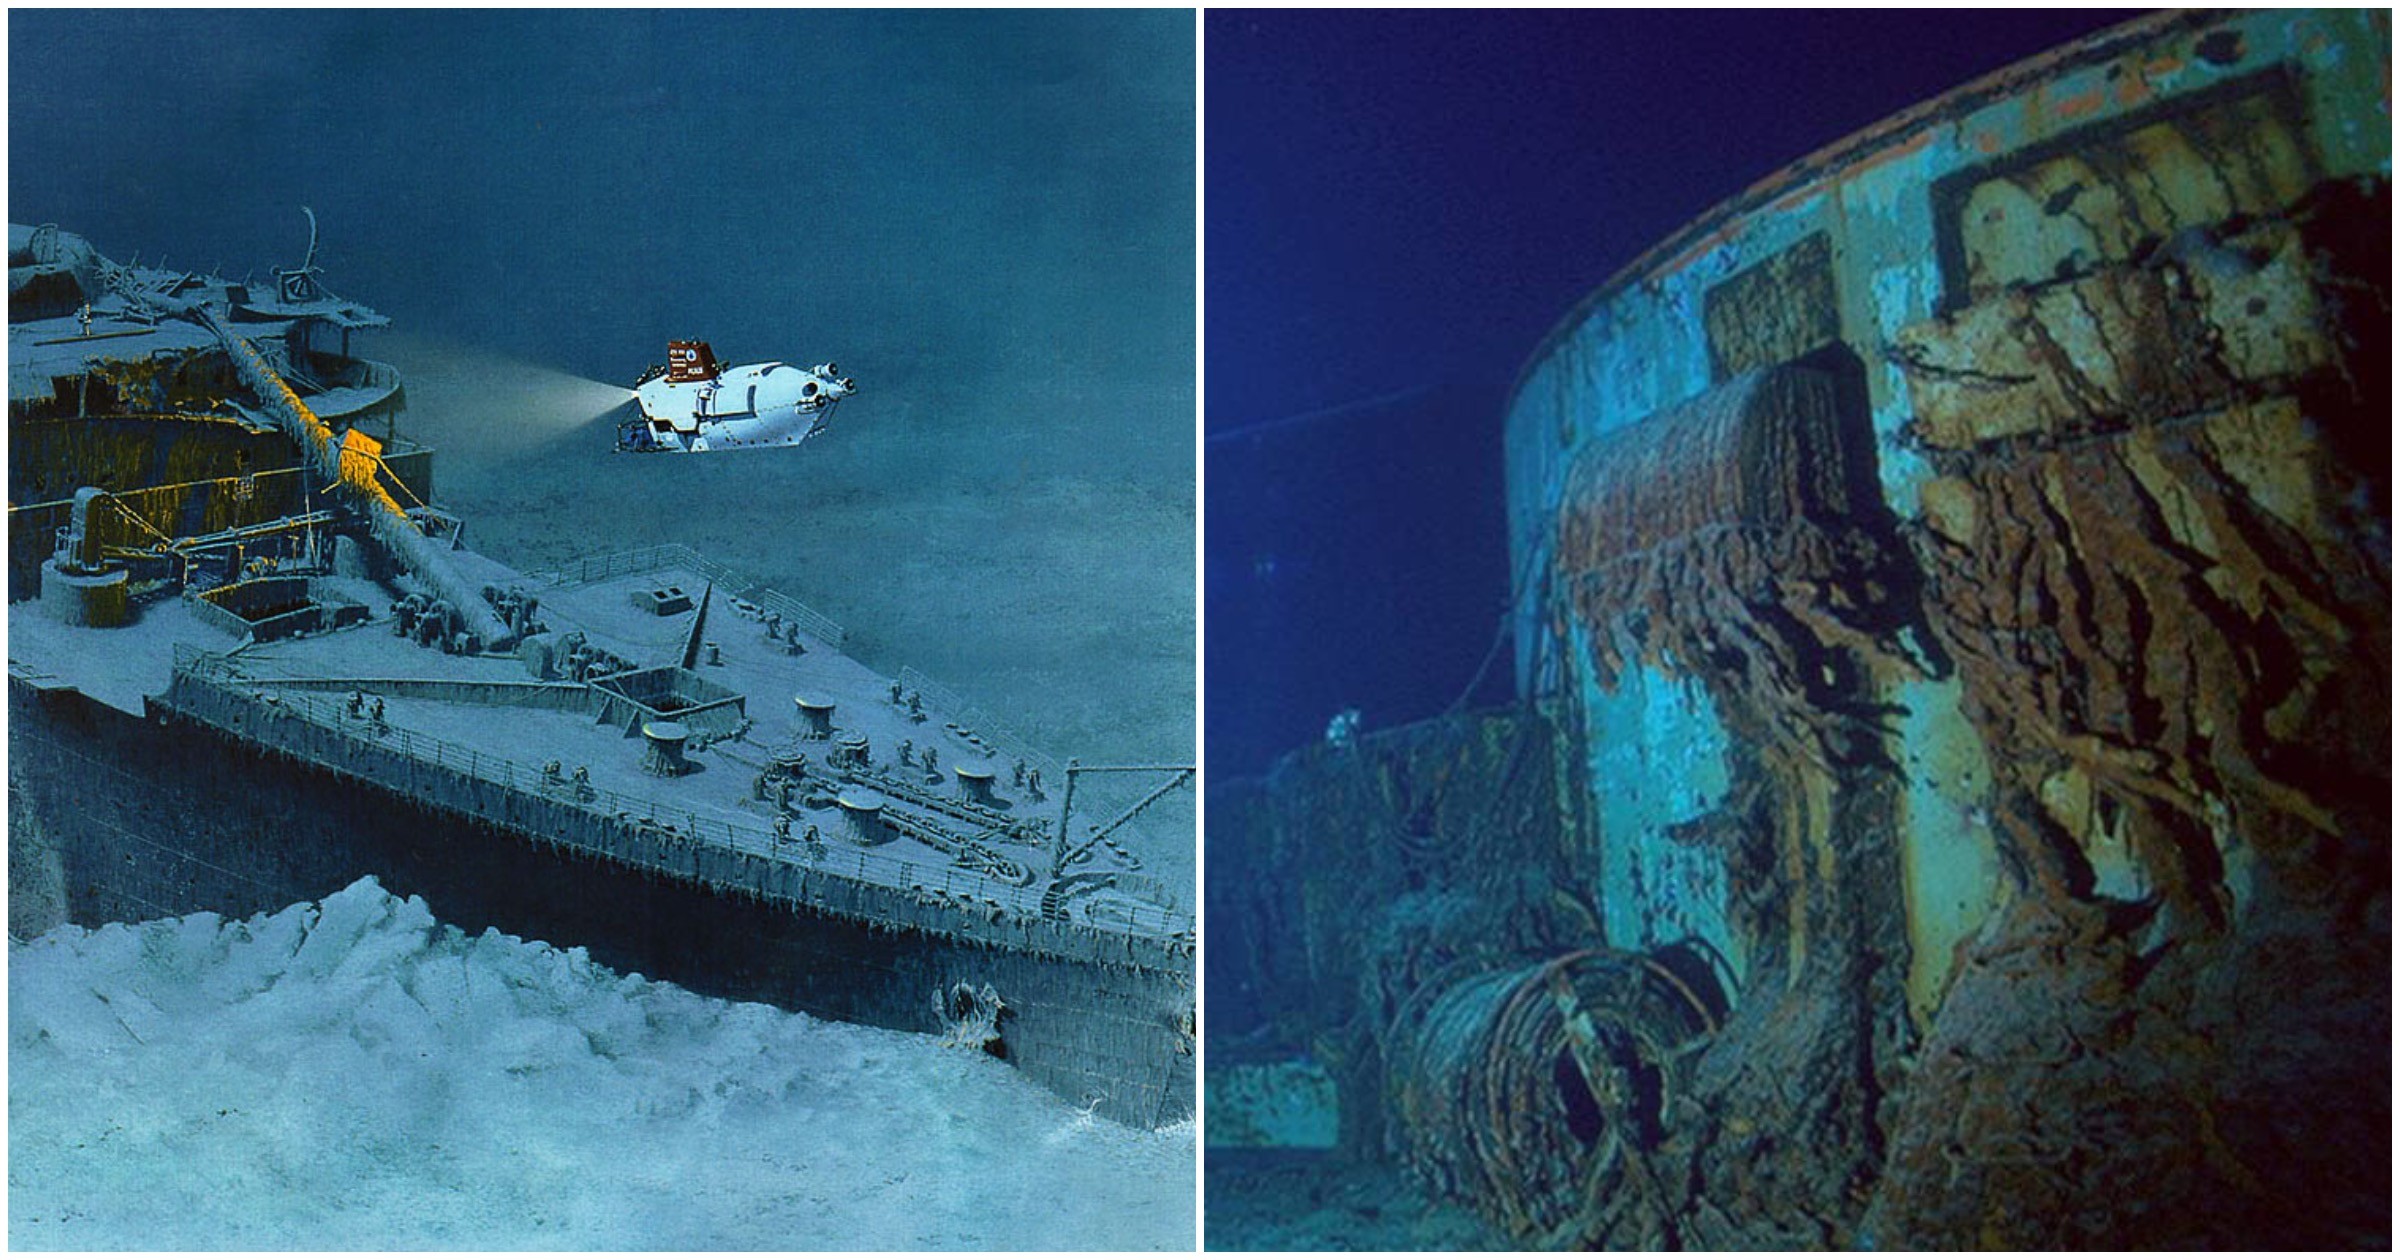 На какой где затонул титаник. Титаник затонул в 1912. Затонувший Титаник 2020. Титаник пароход затонувший в 1912. Северная Атлантика место крушения Титаника.